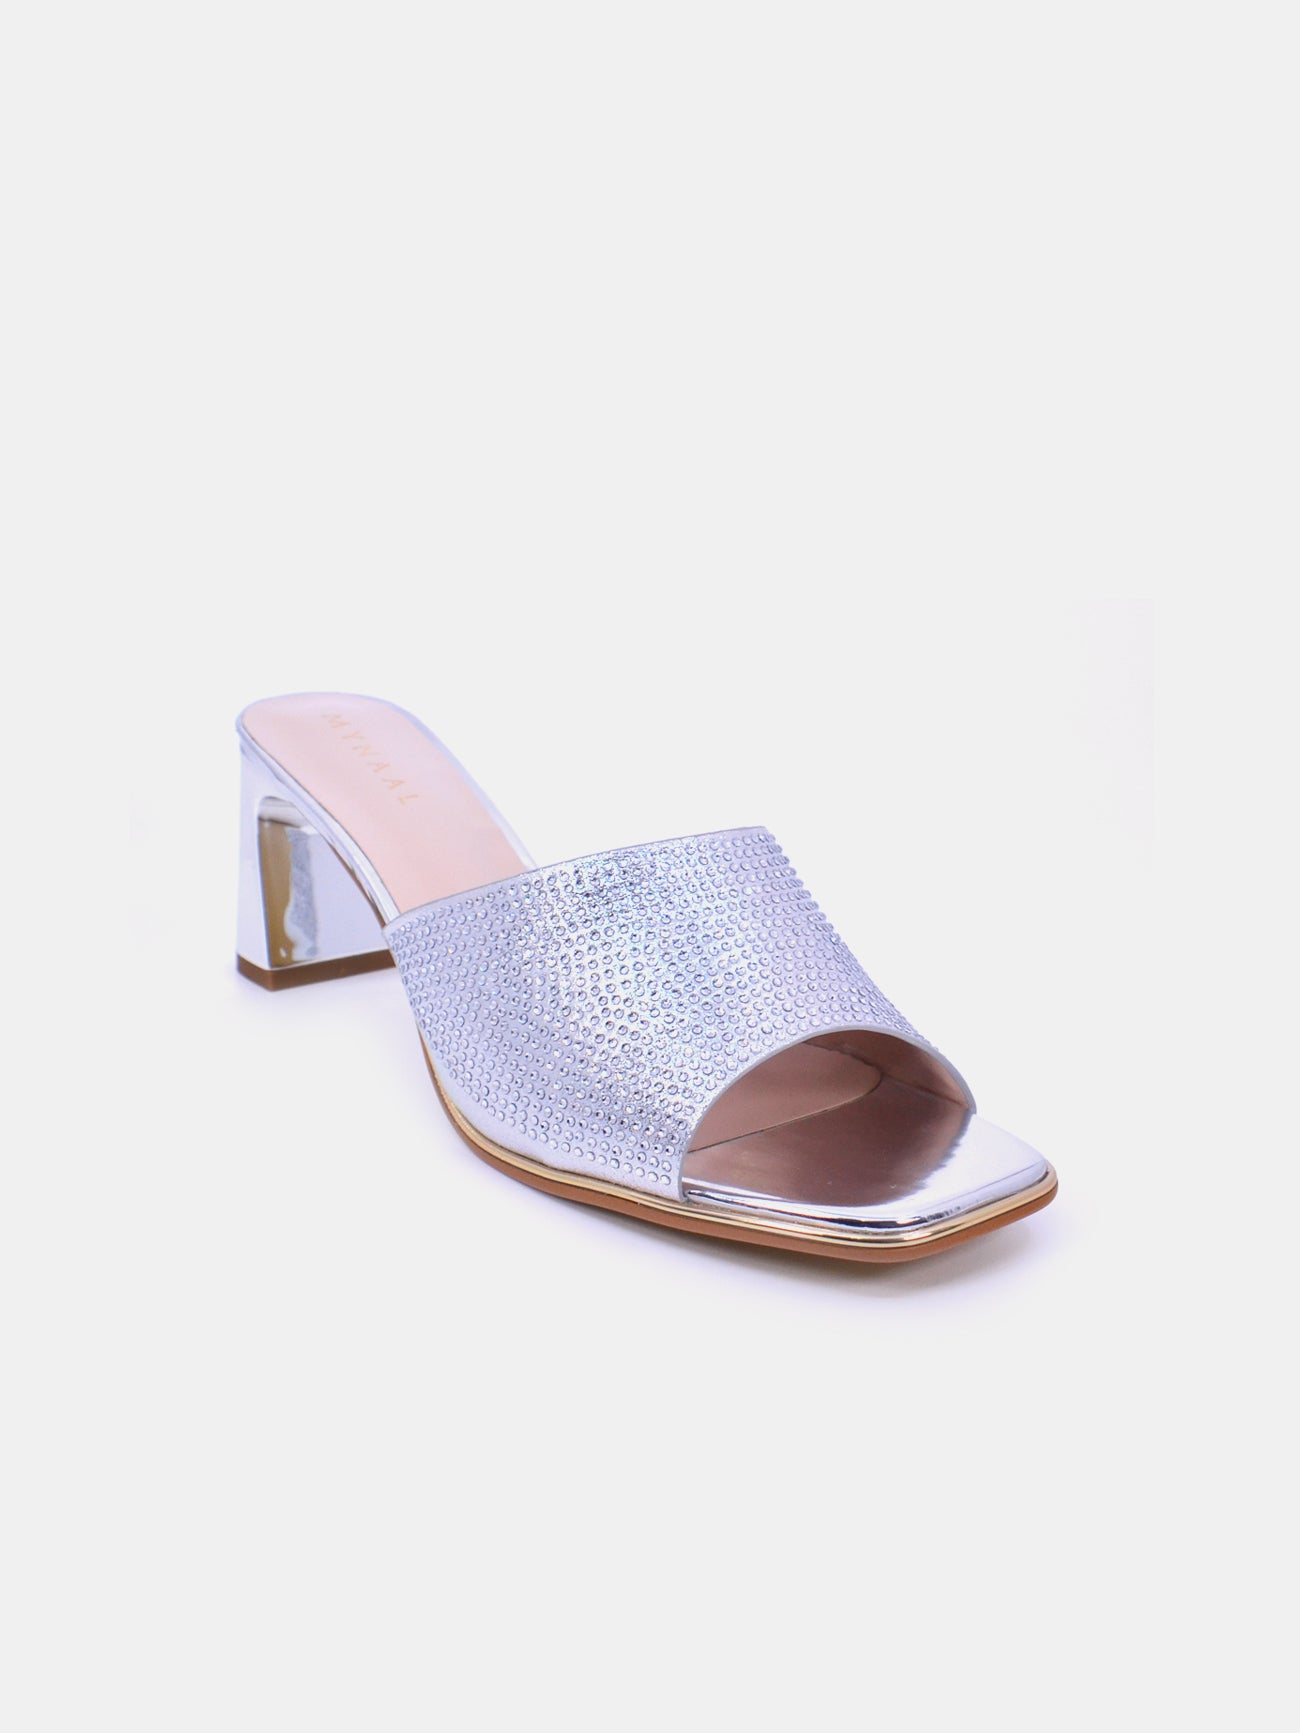 Mynaal Radiq Women's Block Heel Sandals #color_Silver